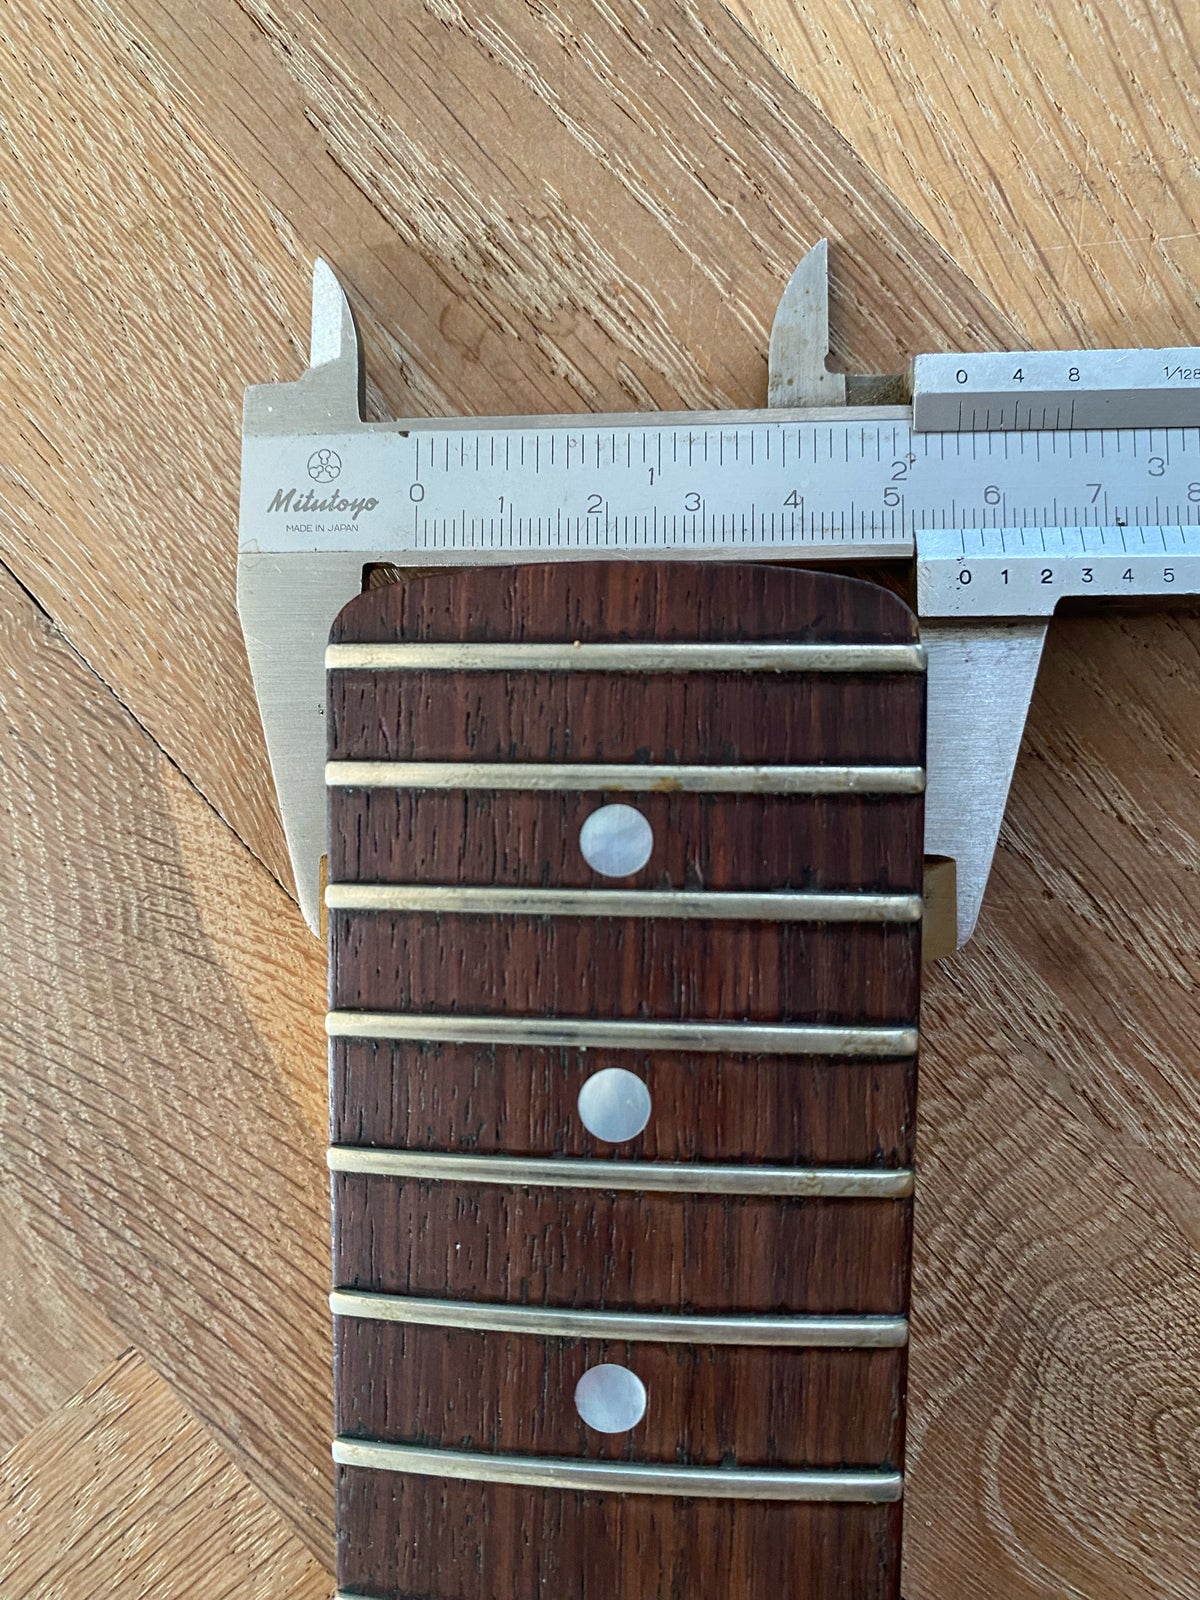 Elguitar, ESP Hals, 1988 ESP Stratocaster